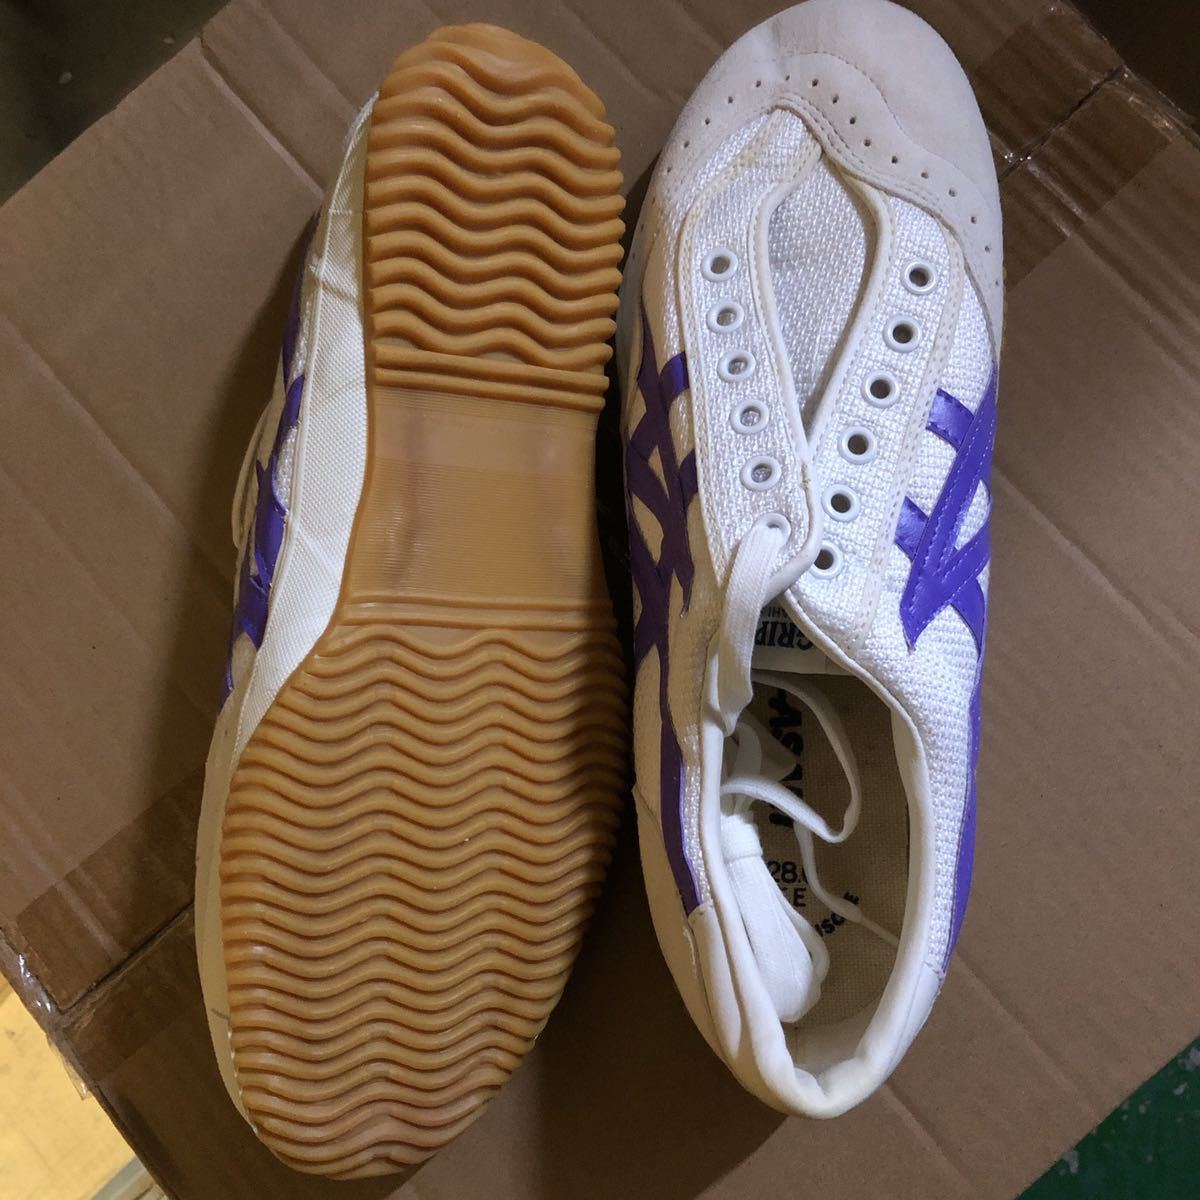  gentleman sneakers Asahi product made in Japan gripper 26 purple 27cm 4 pair .4000 jpy 